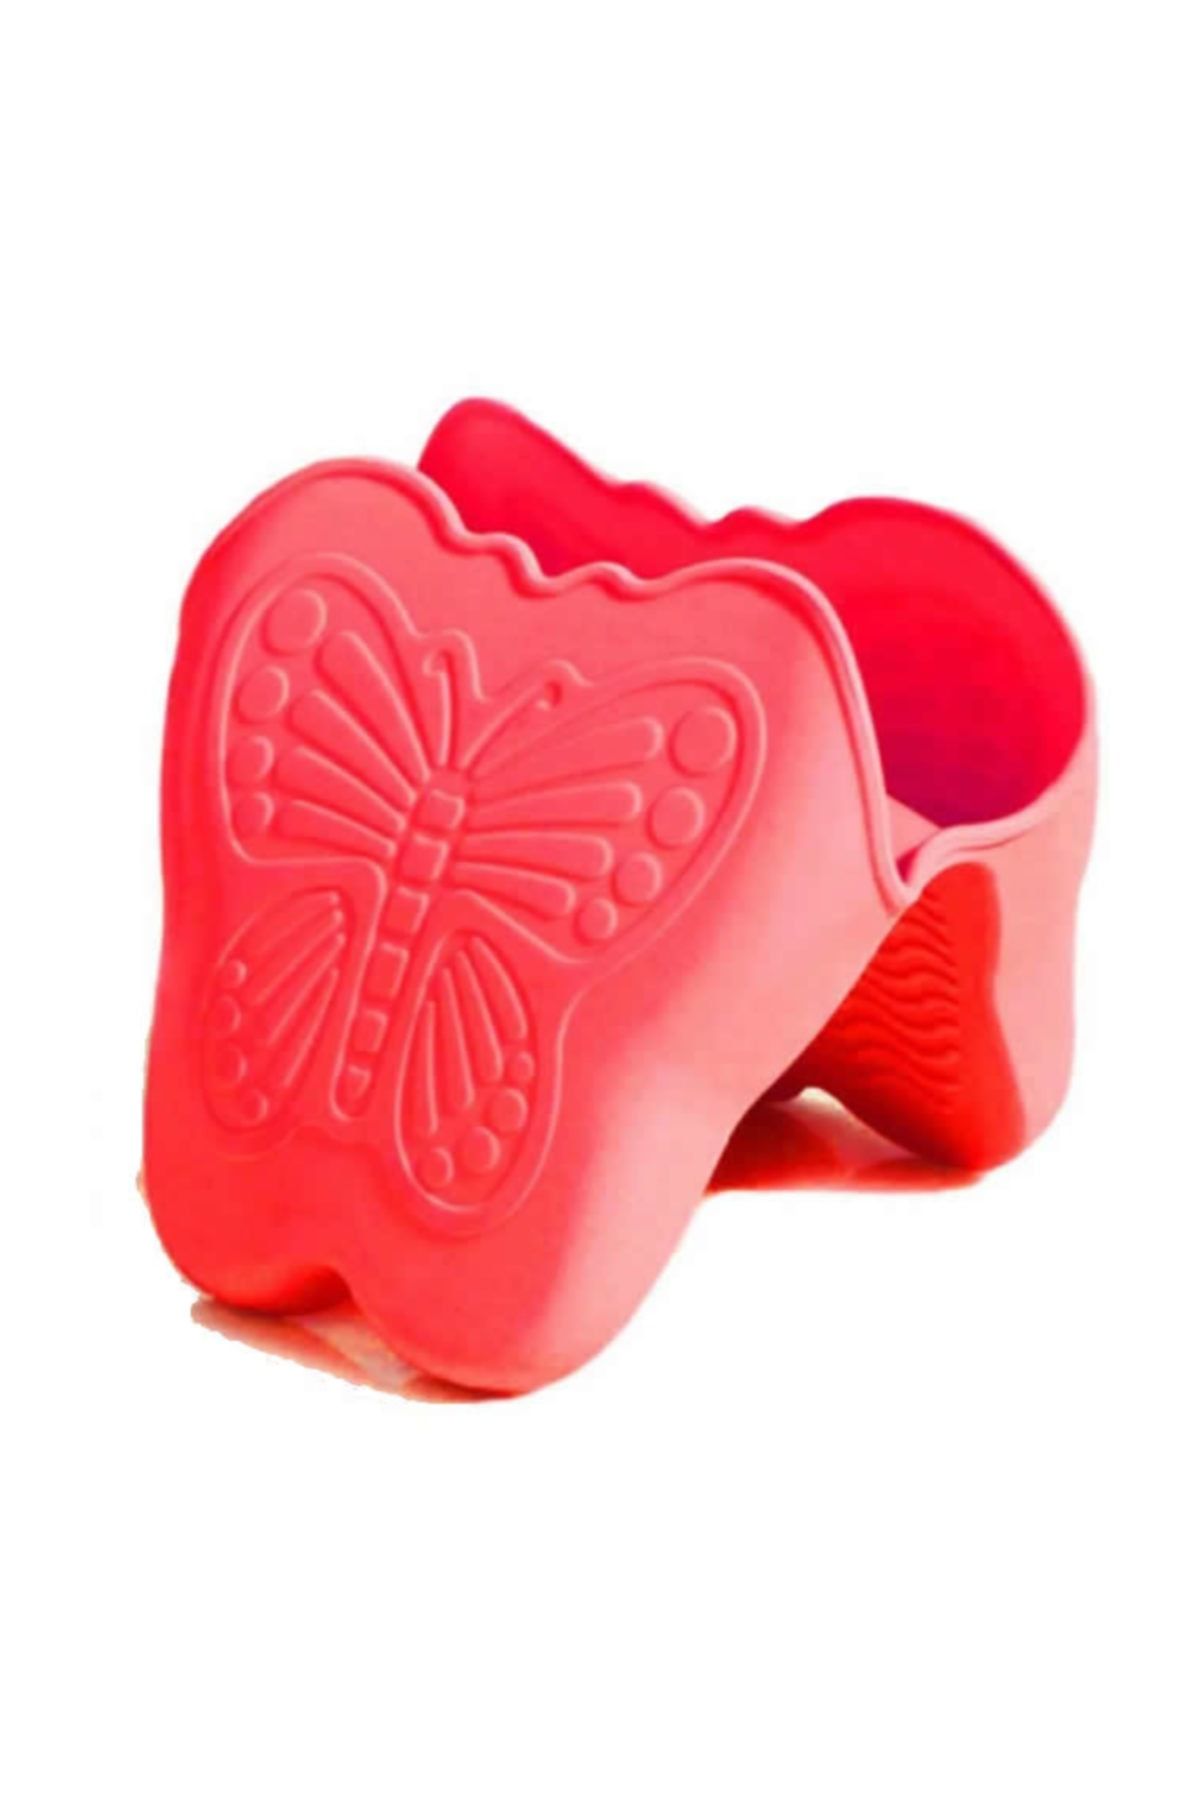 Penguen Silikon Fırın Tutacağı Mini Kelebek Desenli 2'li Paket Kırmızı